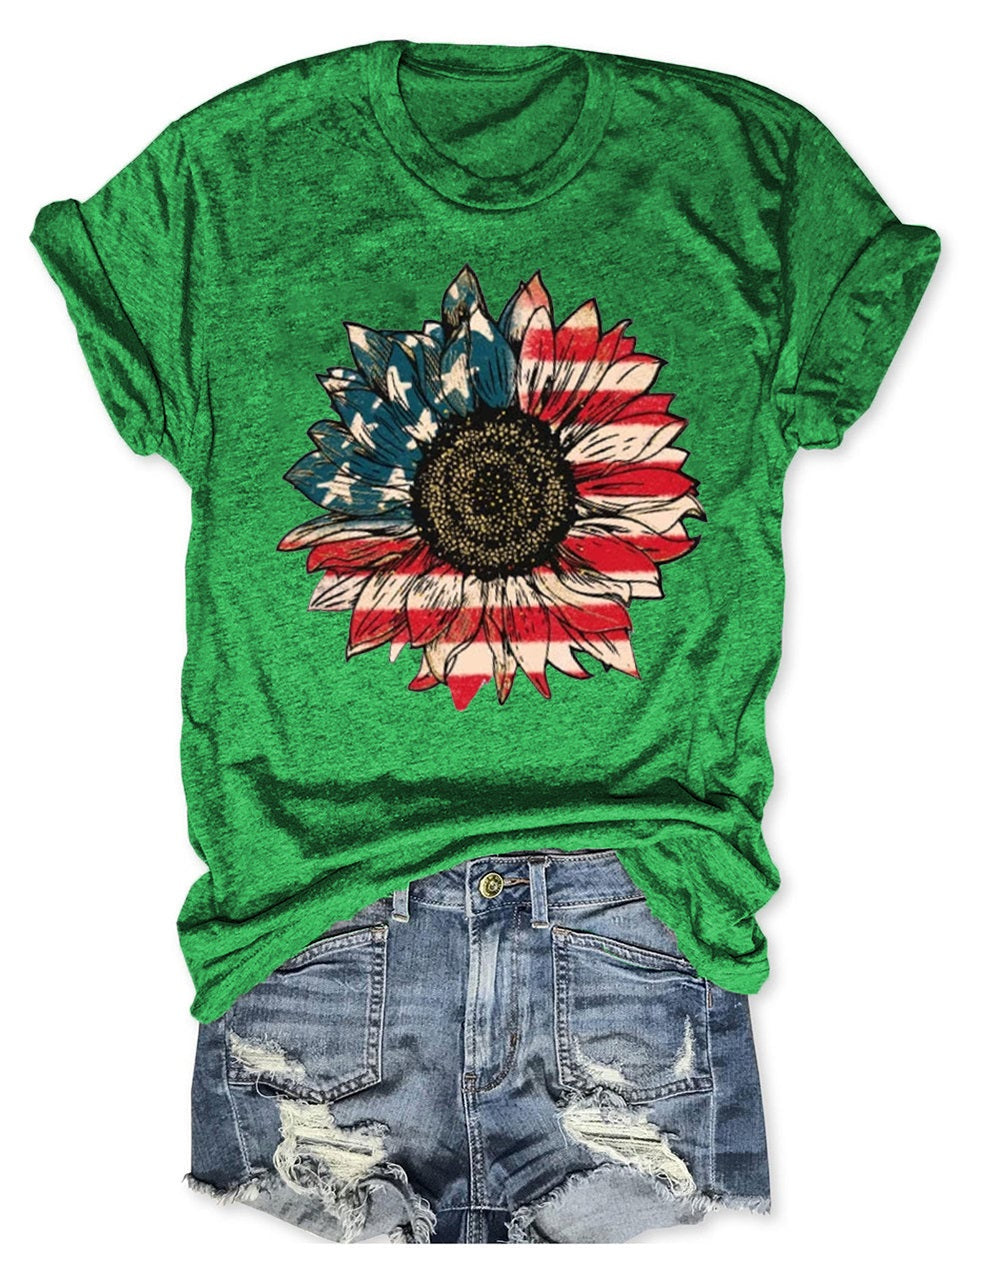 Amerika-Sonnenblumen-T-Shirt